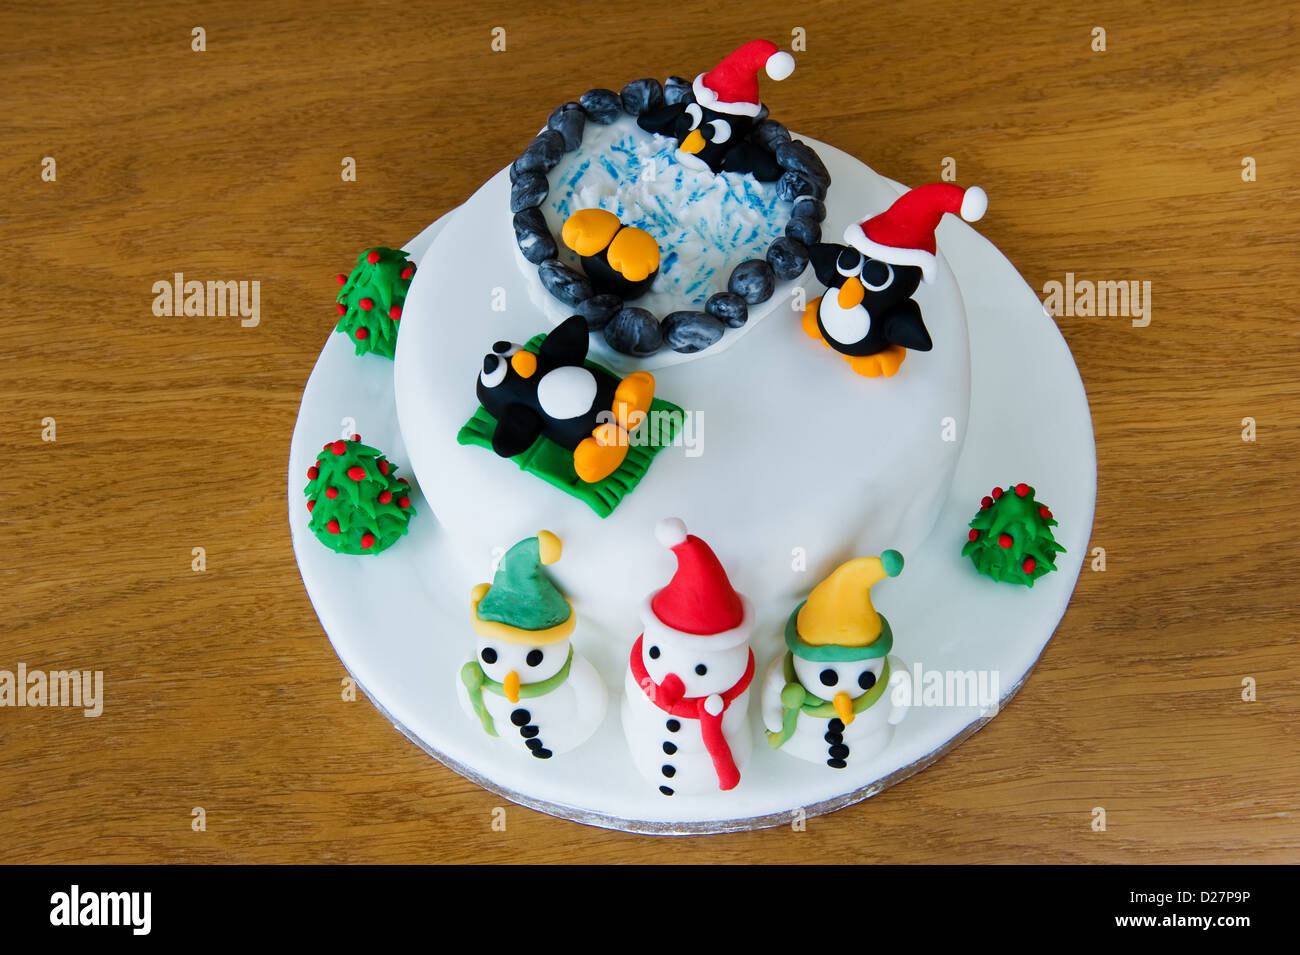 Novità la torta di Natale, decorata con divertenti pinguini e pupazzi di neve. Foto Stock